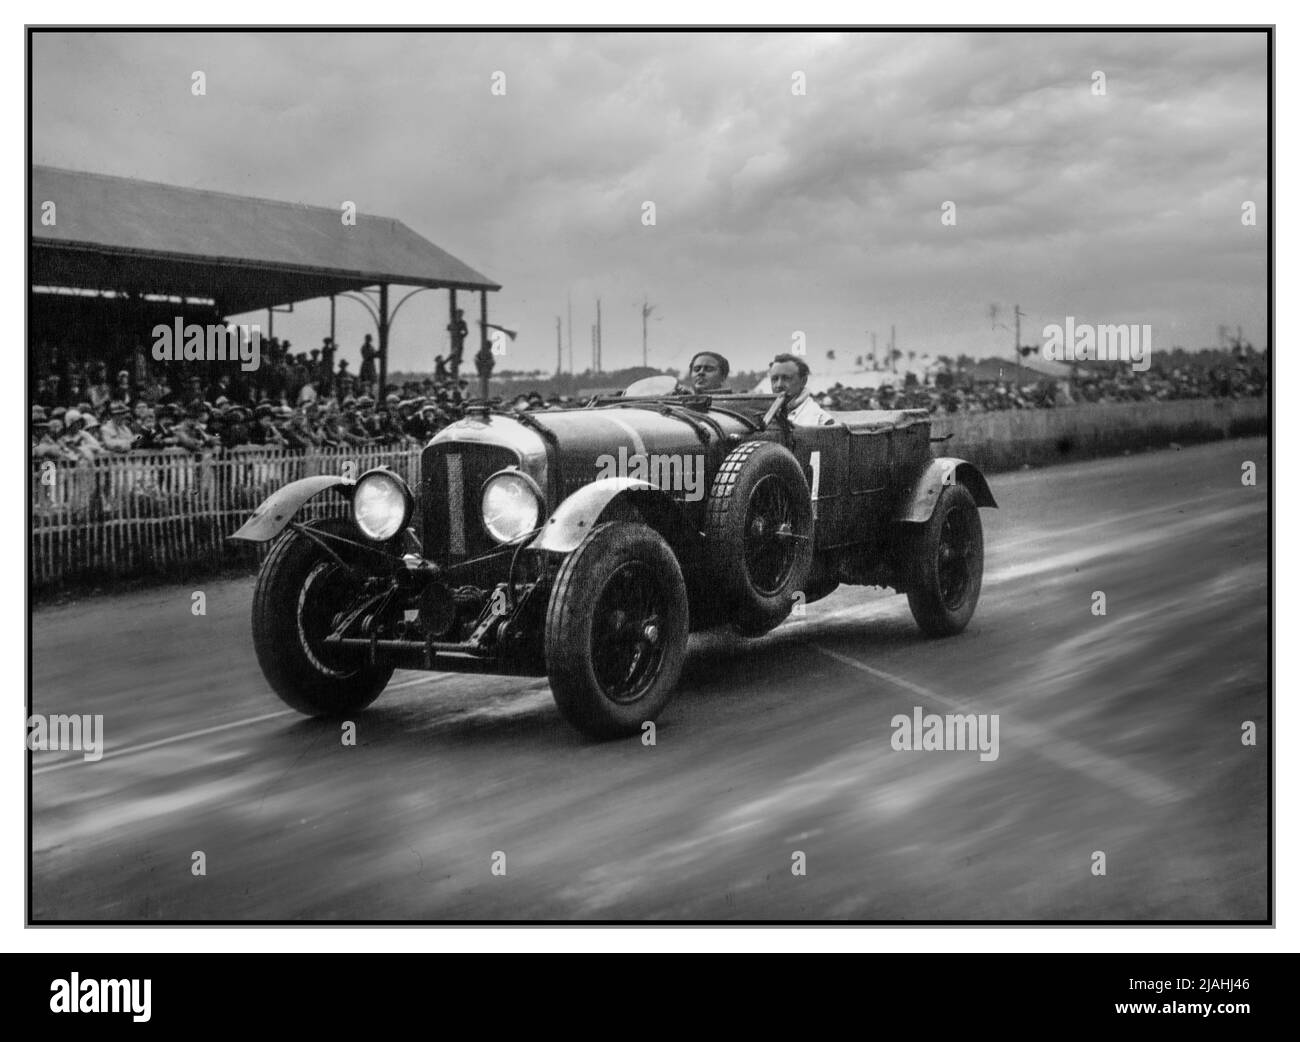 1929 VINTAGE LE MANS 24 HRS BENTLEY VAINQUEUR NUMÉRO 1 de Barnato et Birkin 1929 24 heures du Mans les 1929 24 heures du Mans ont été le Grand Prix d'Endurance 7th qui a eu lieu au circuit de la Sarthe les 15 et 16 juin 1929 à L'exposition la plus dominante dans la course à ce jour, Bentley a obtenu une victoire complète prenant les quatre premières places sur la distance. Woolf Barnato, le réalisateur de Bentley, a répété sa victoire de l'année précédente, coconduite cette fois par son compagnon Bentley Boy Sir Henry “Tim” Birkin. Ils avaient mené du début à la fin, établissant un nouveau record de distance et de tour. Banque D'Images